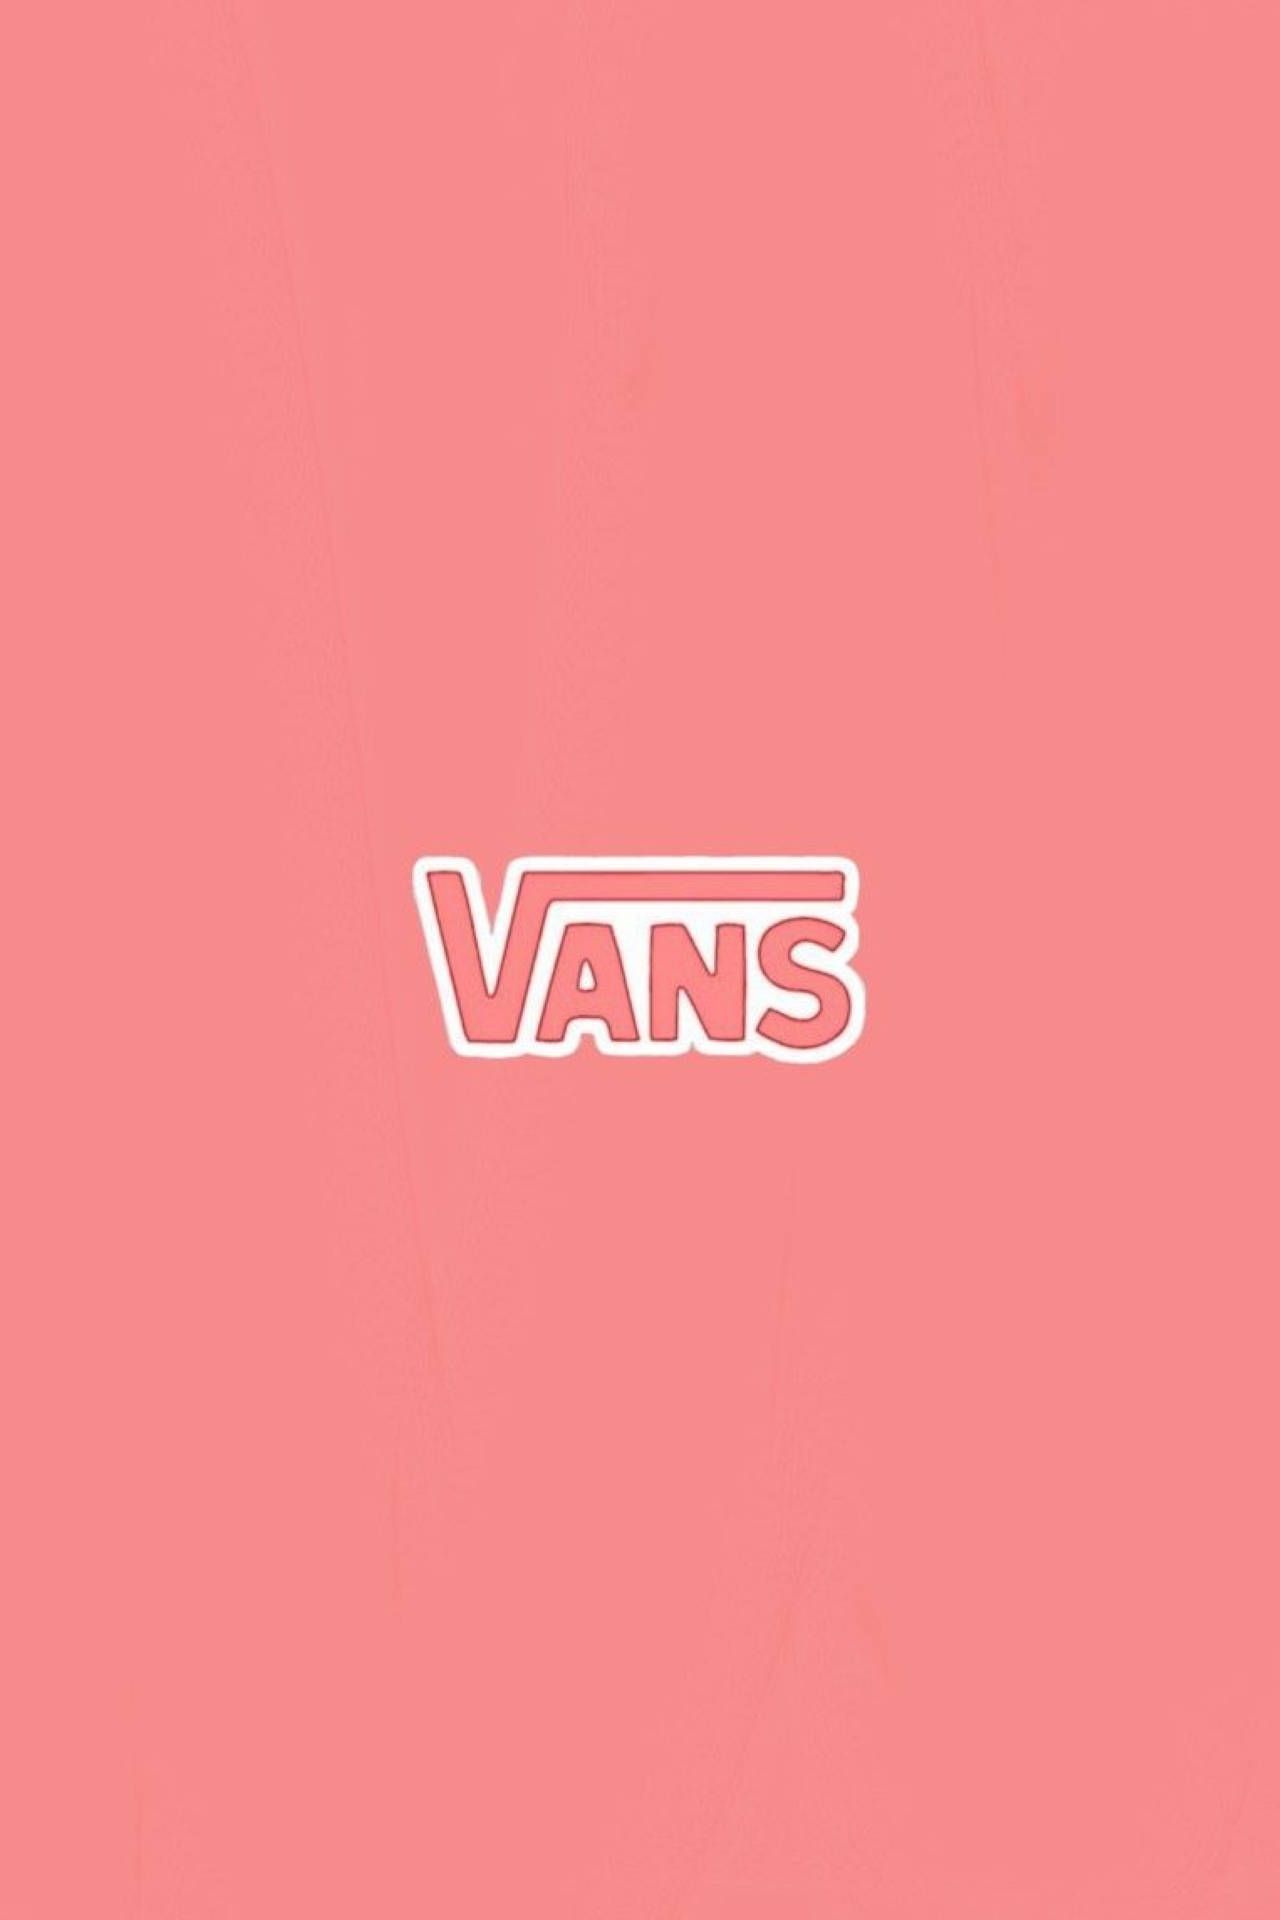 Vans wallpaper for your phone - Vans